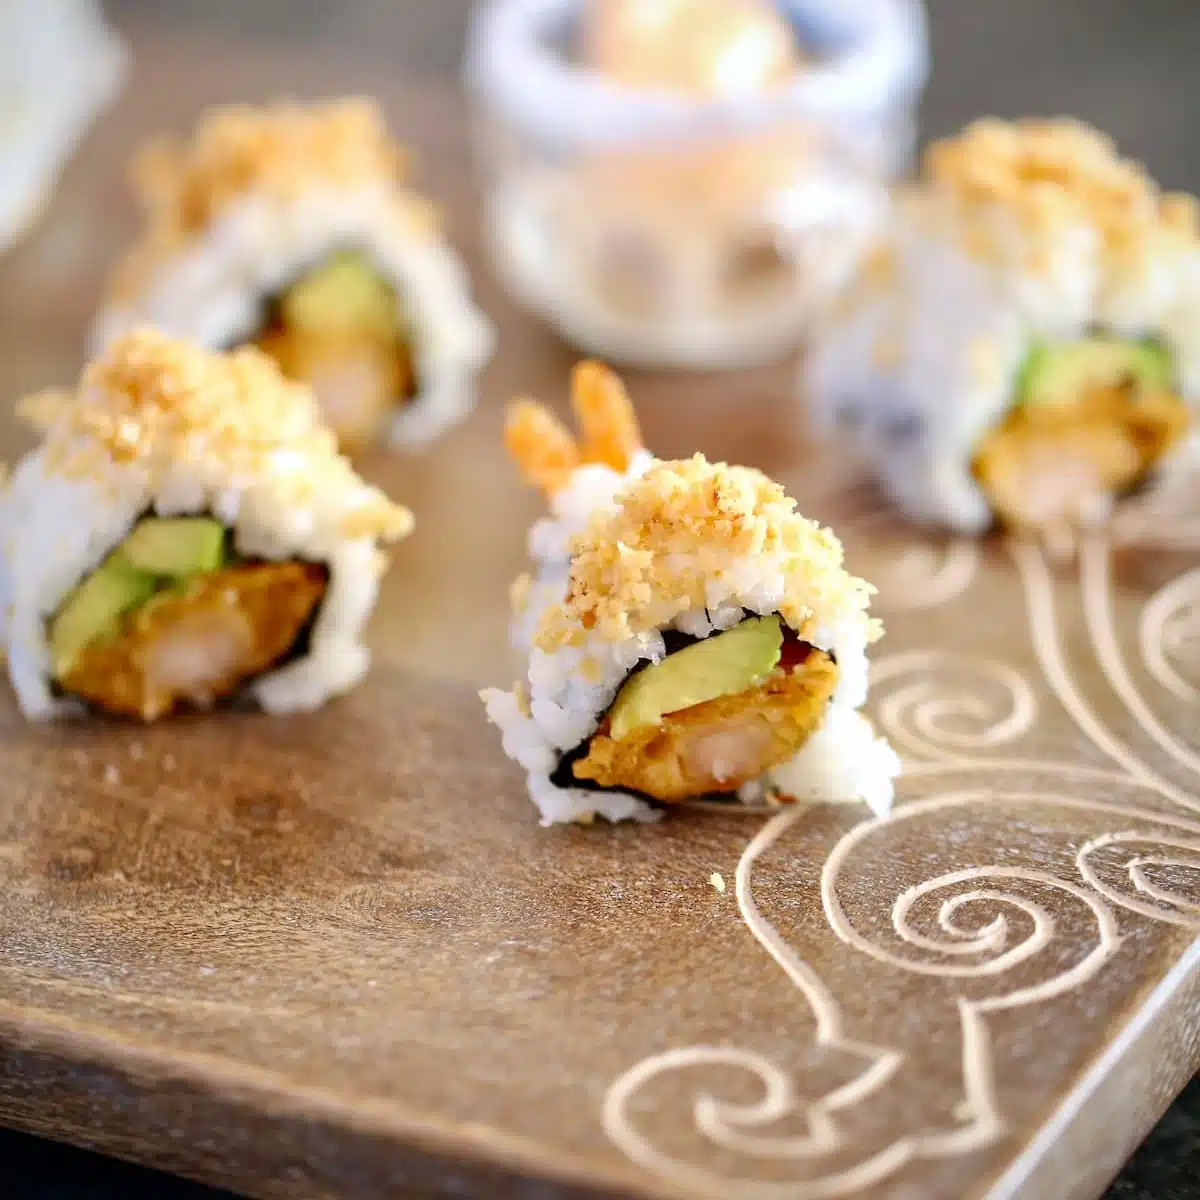 a cutting board of cut sushi rolls.